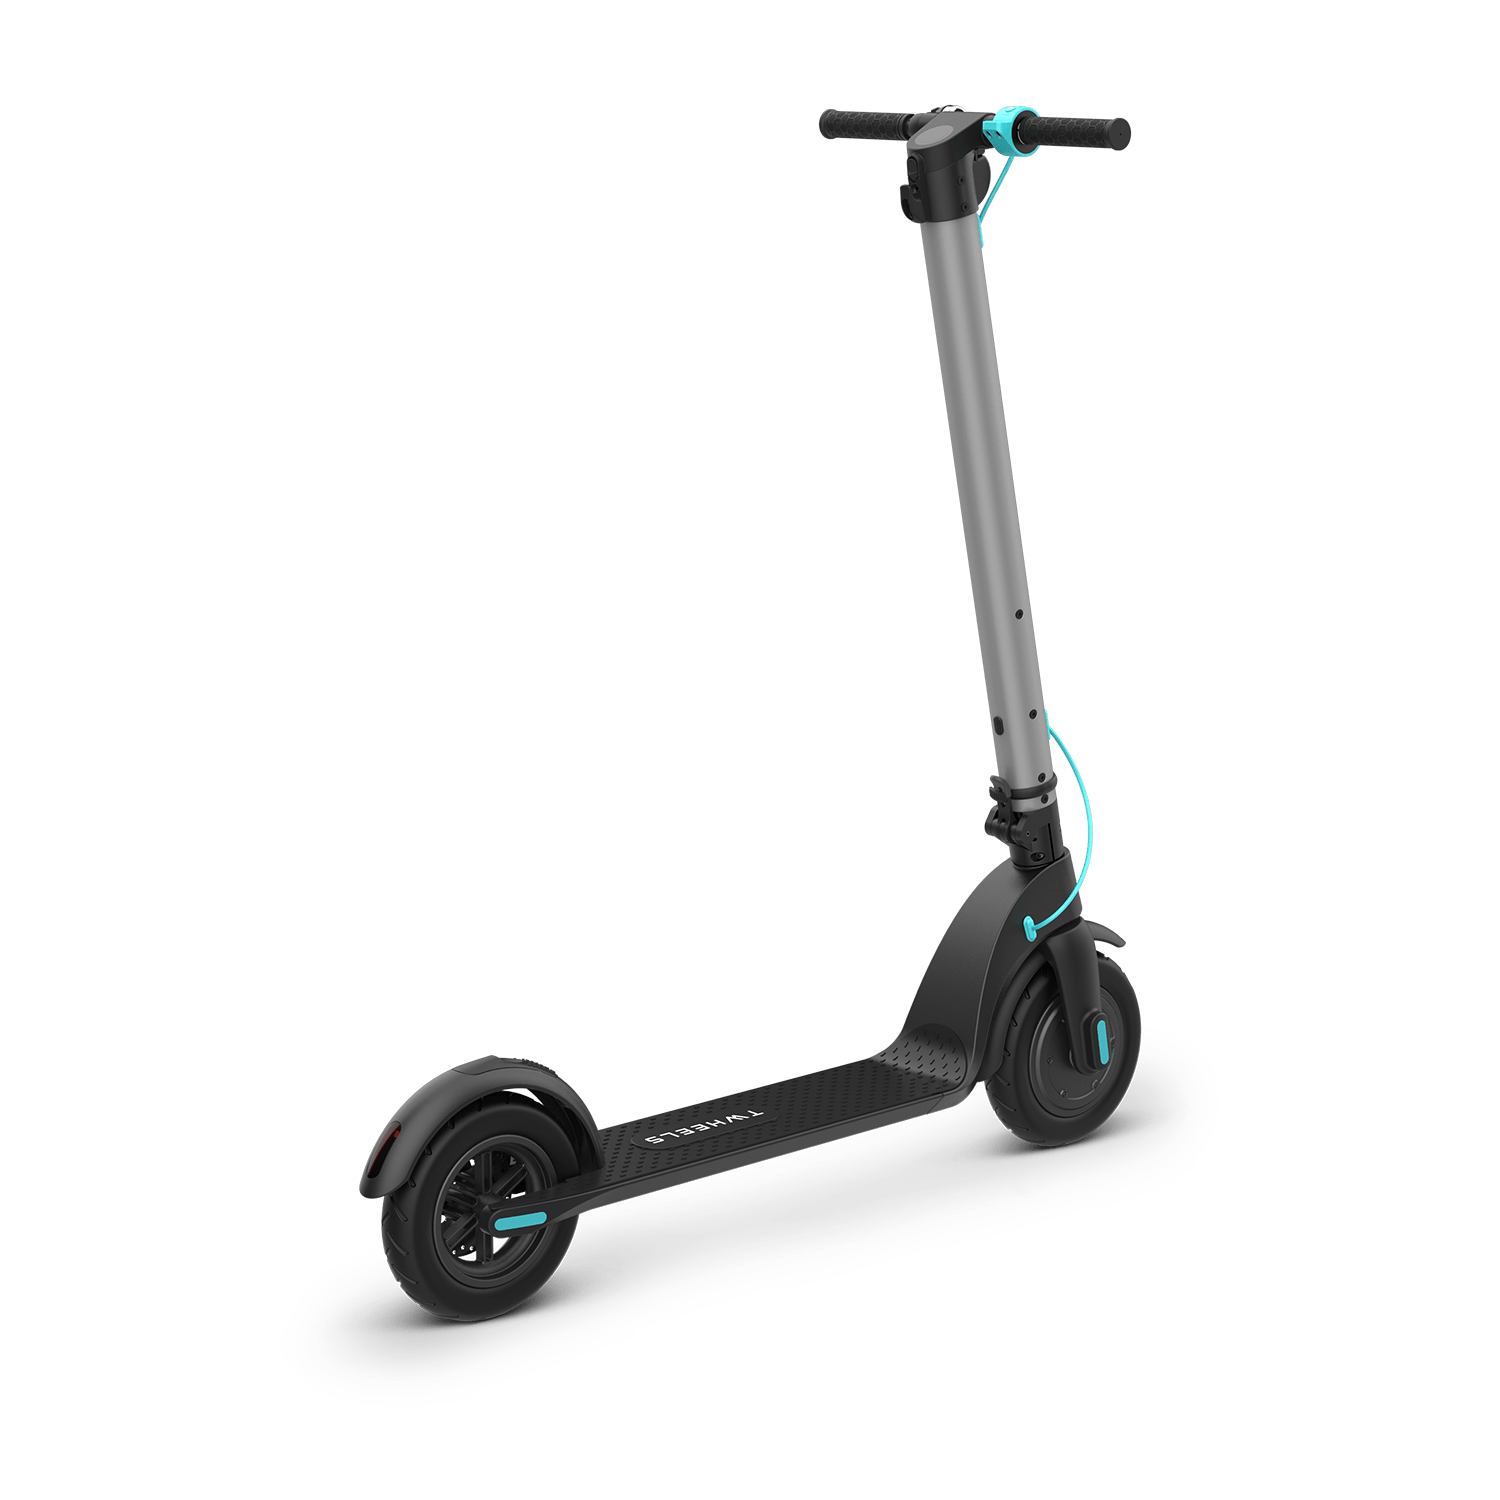 Dein Zweiradprofi rund um Elektroscooter, Elektroroller & Elektromotorräder im Raum St. Gallen